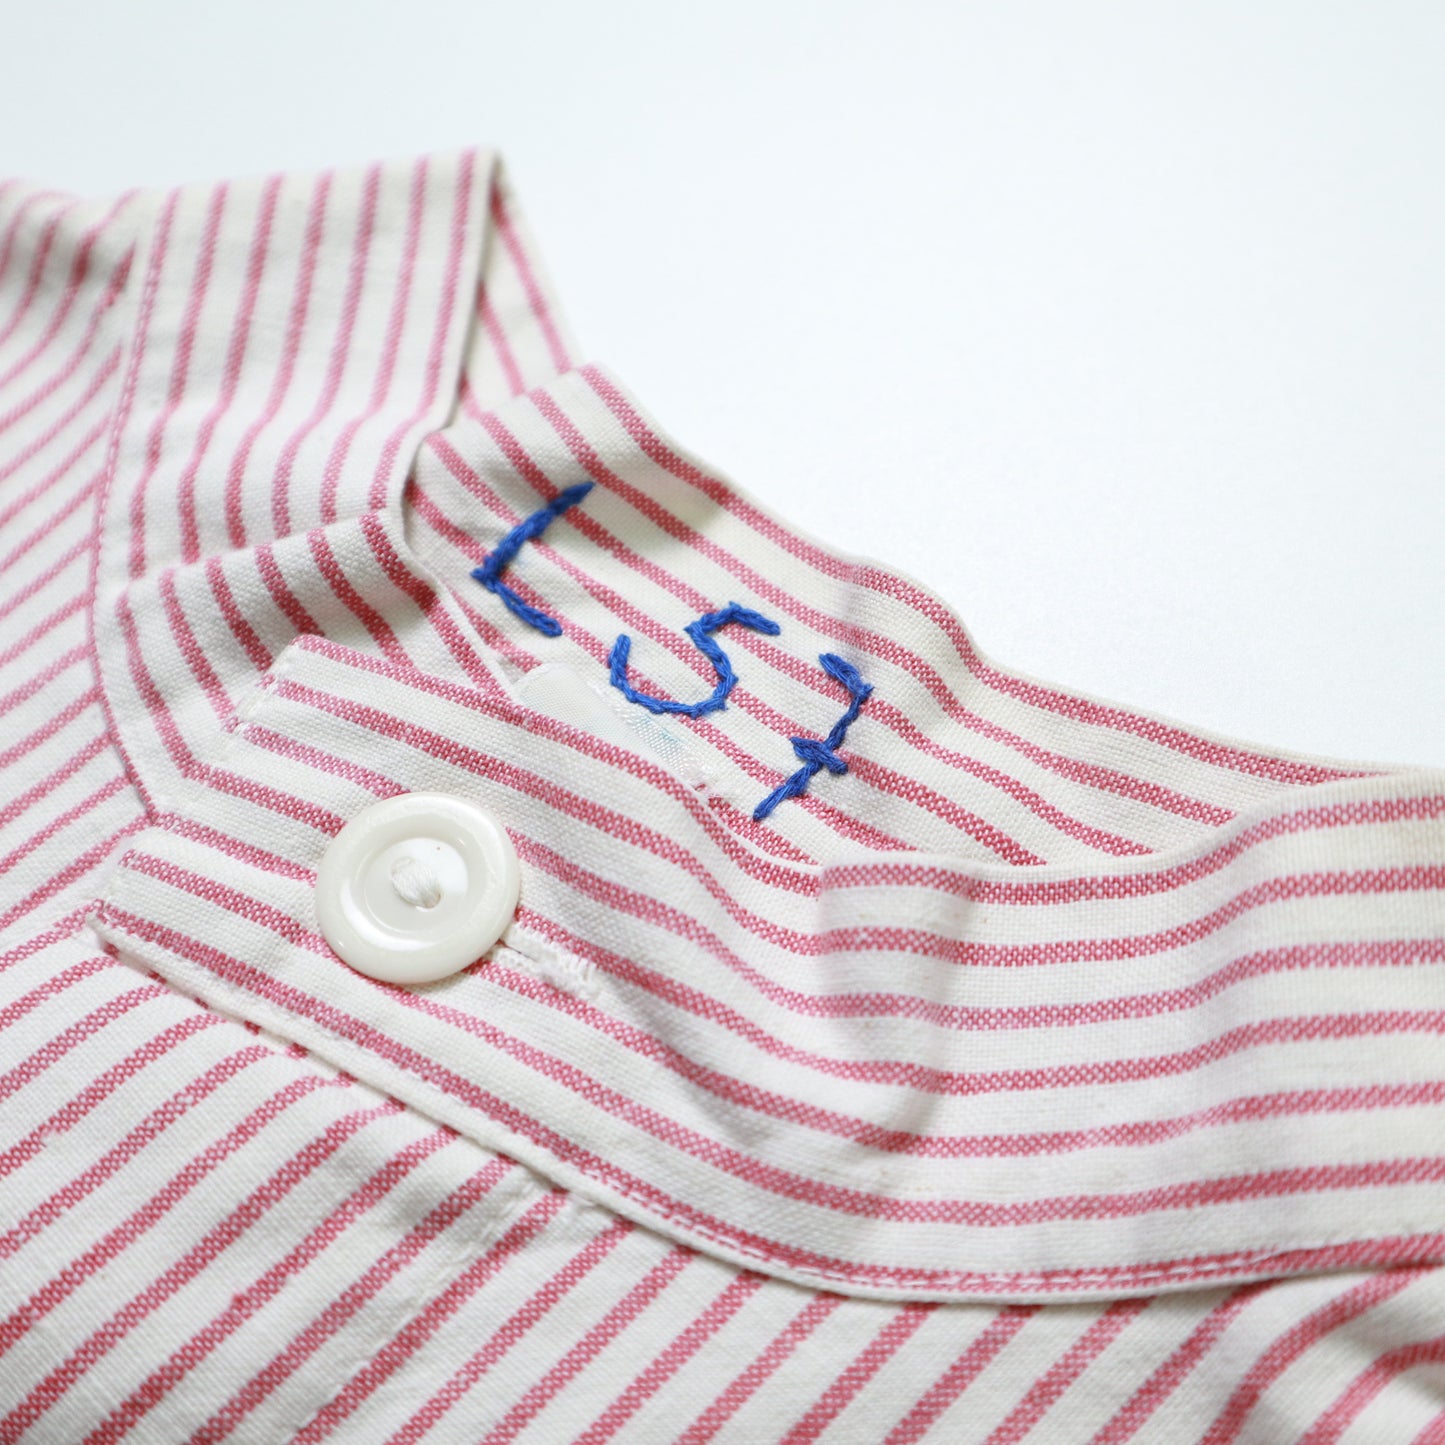 1970年代の赤と白のストライプのファーマーズシャツオーバーオール